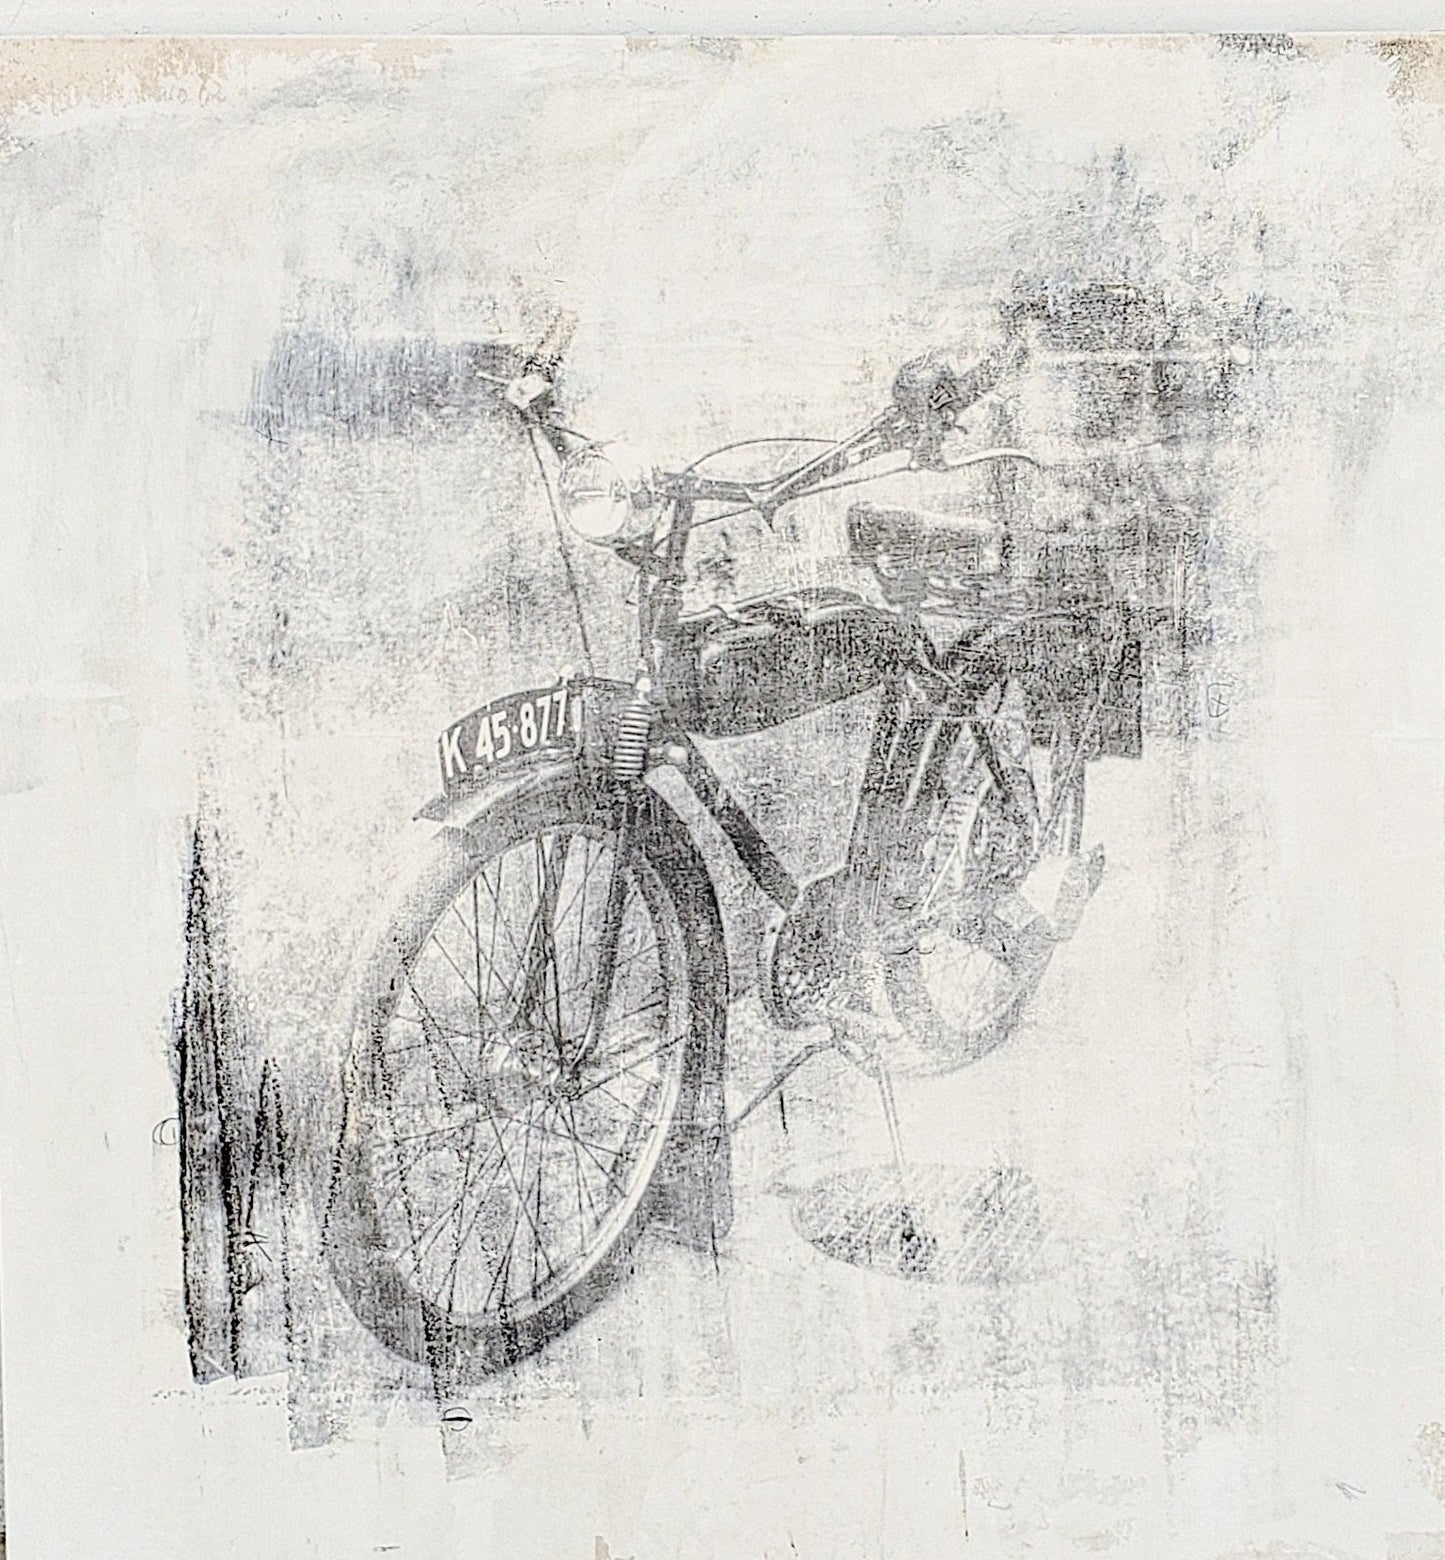 Dominic Tortorici "Bikes" Liquid Emulsion Painting